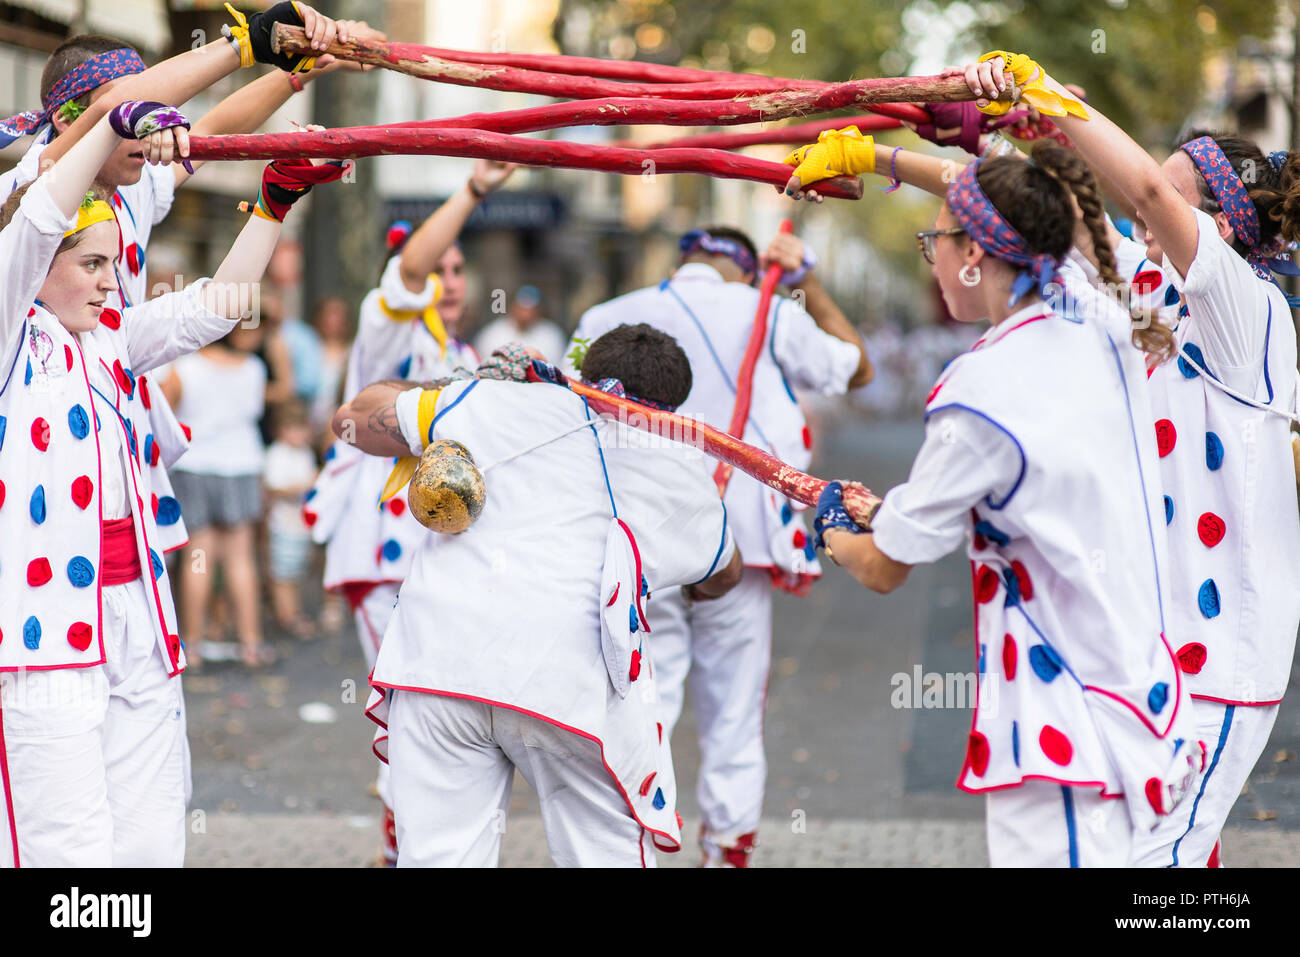 People performing for the Feta Major in Vilanova i la Geltru, Barcelona - Spain Stock Photo